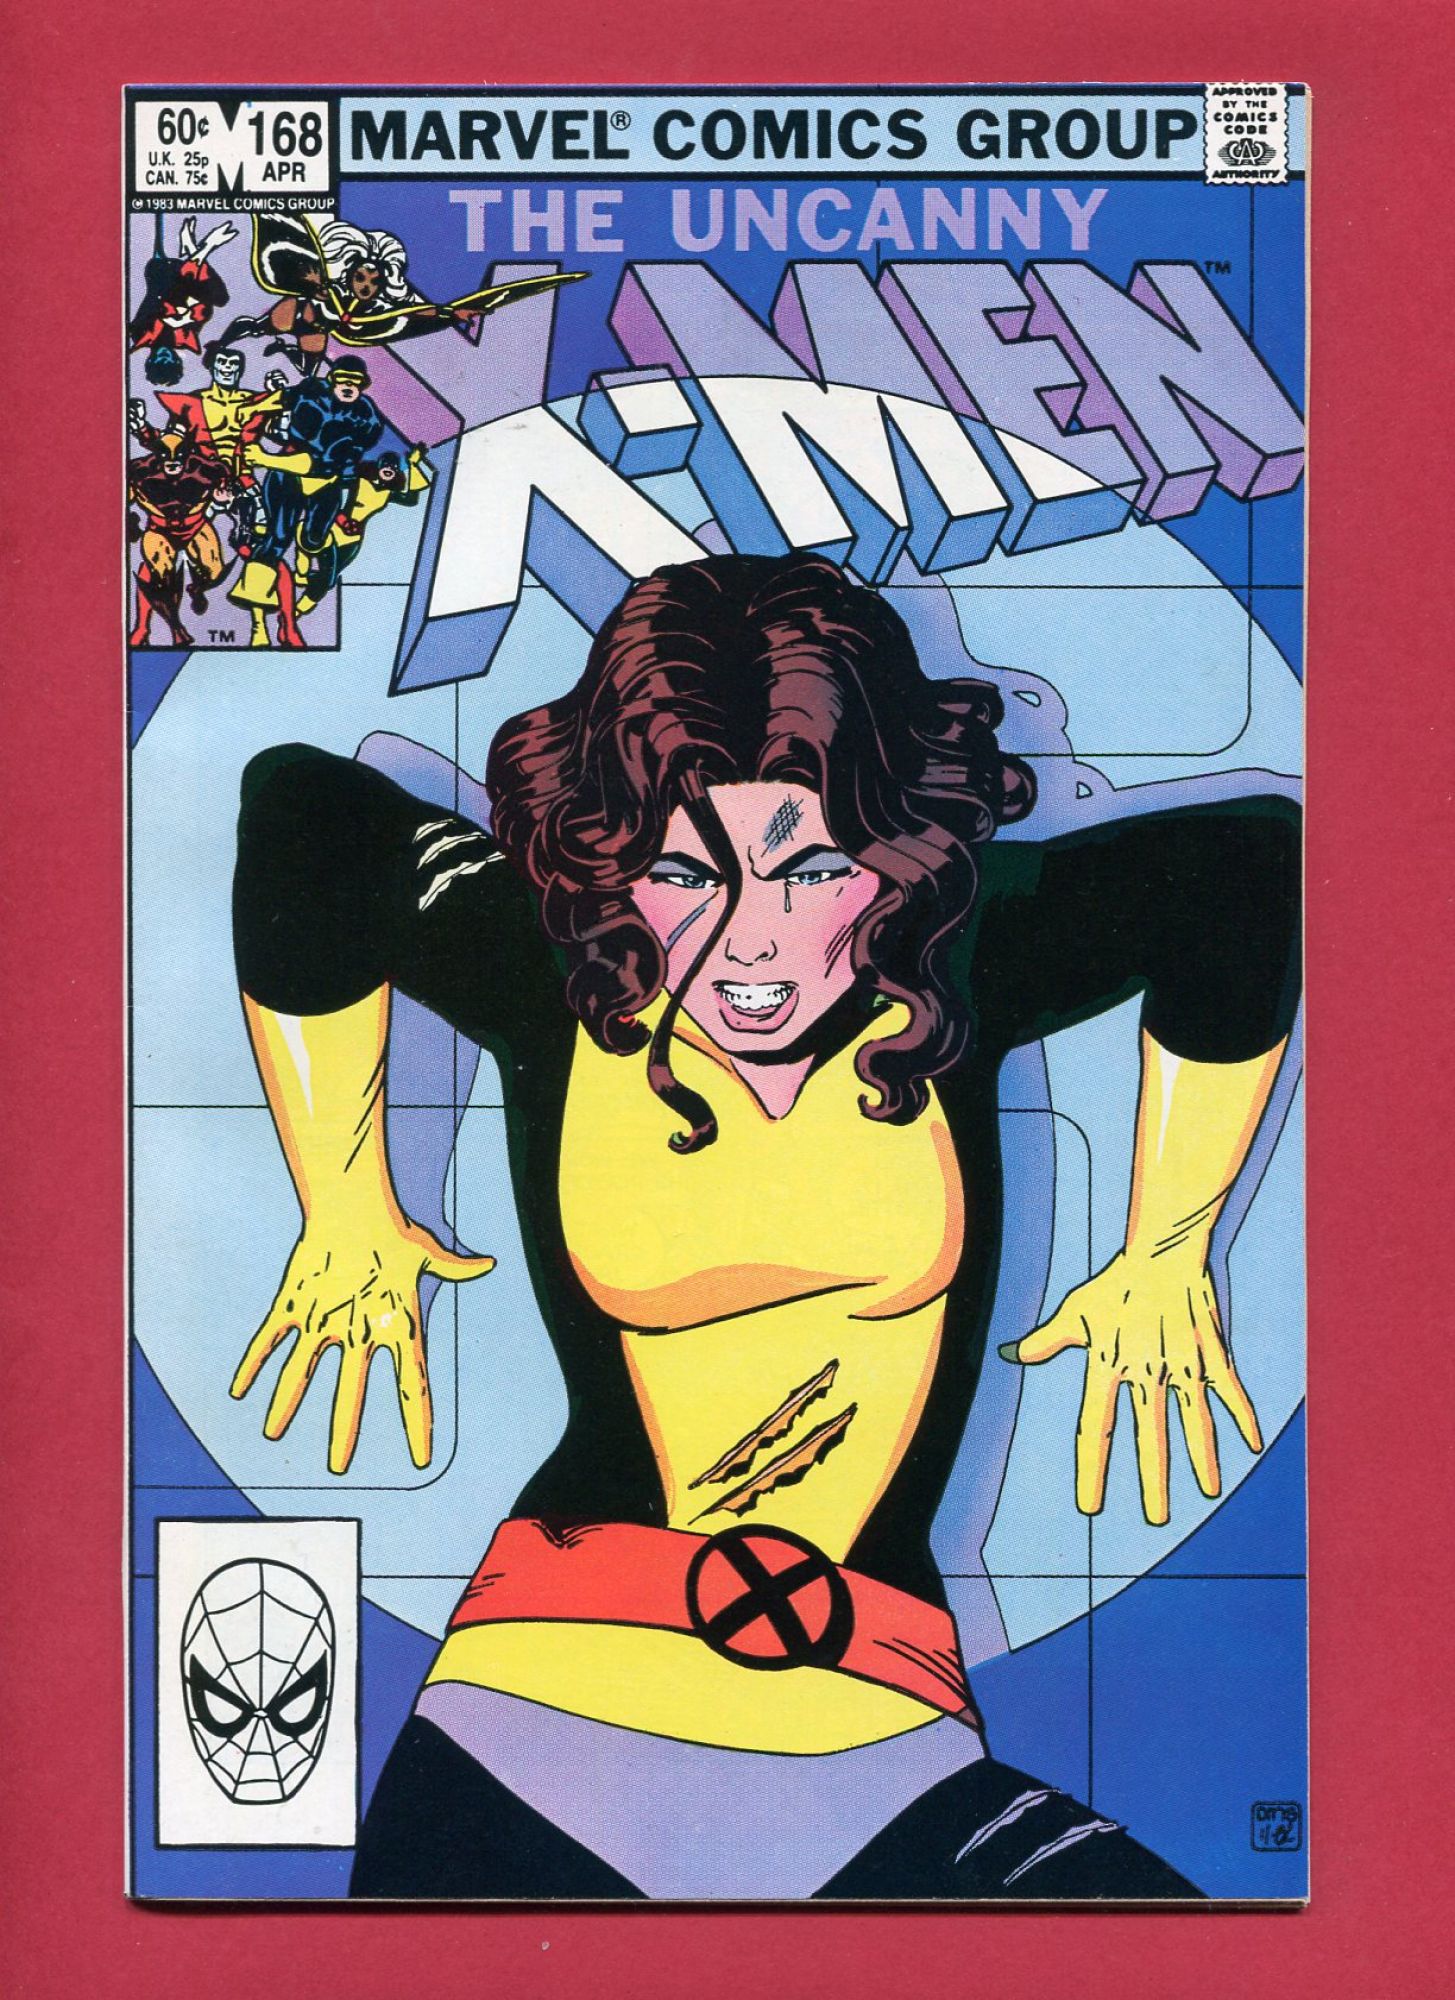 Uncanny X-Men #168, Apr 1983, 9.2 NM-